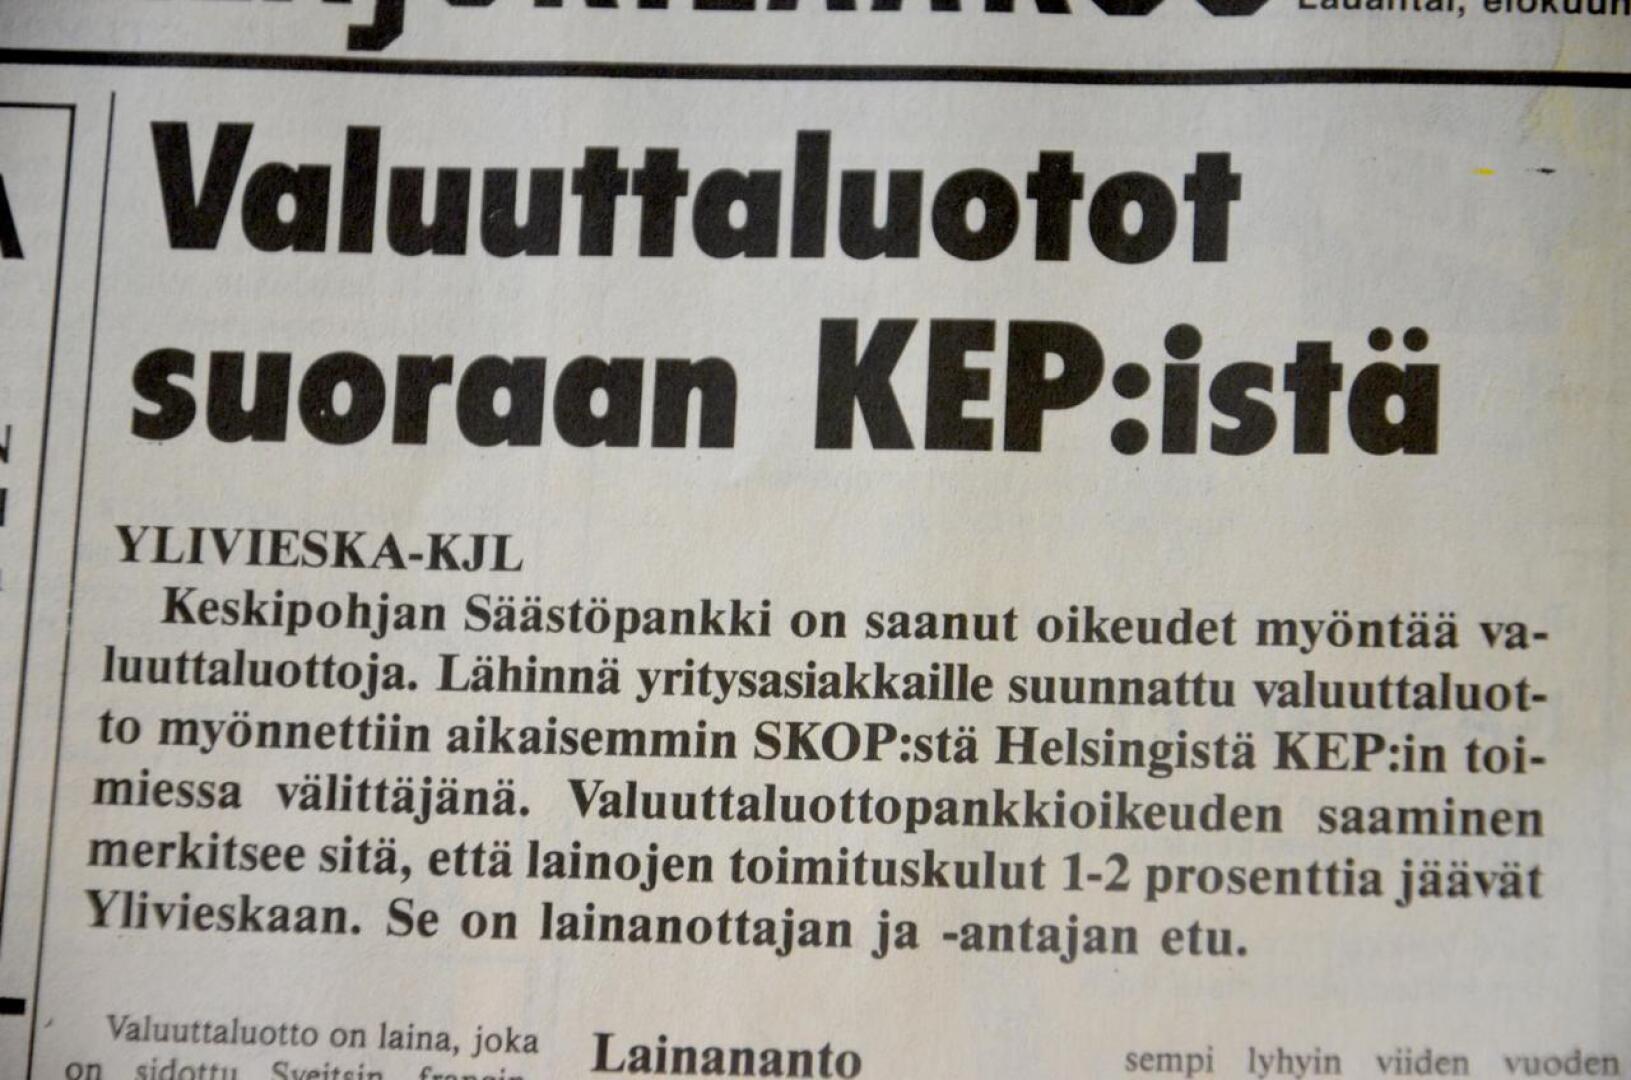 Kalajokilaakson uutinen kertoi vuotta sitten, että nyt on raha yrityksille halpaa valuuttalainoina. Suomen pankin säätelemien markkalainojen korko oli yli 10 prosenttia.